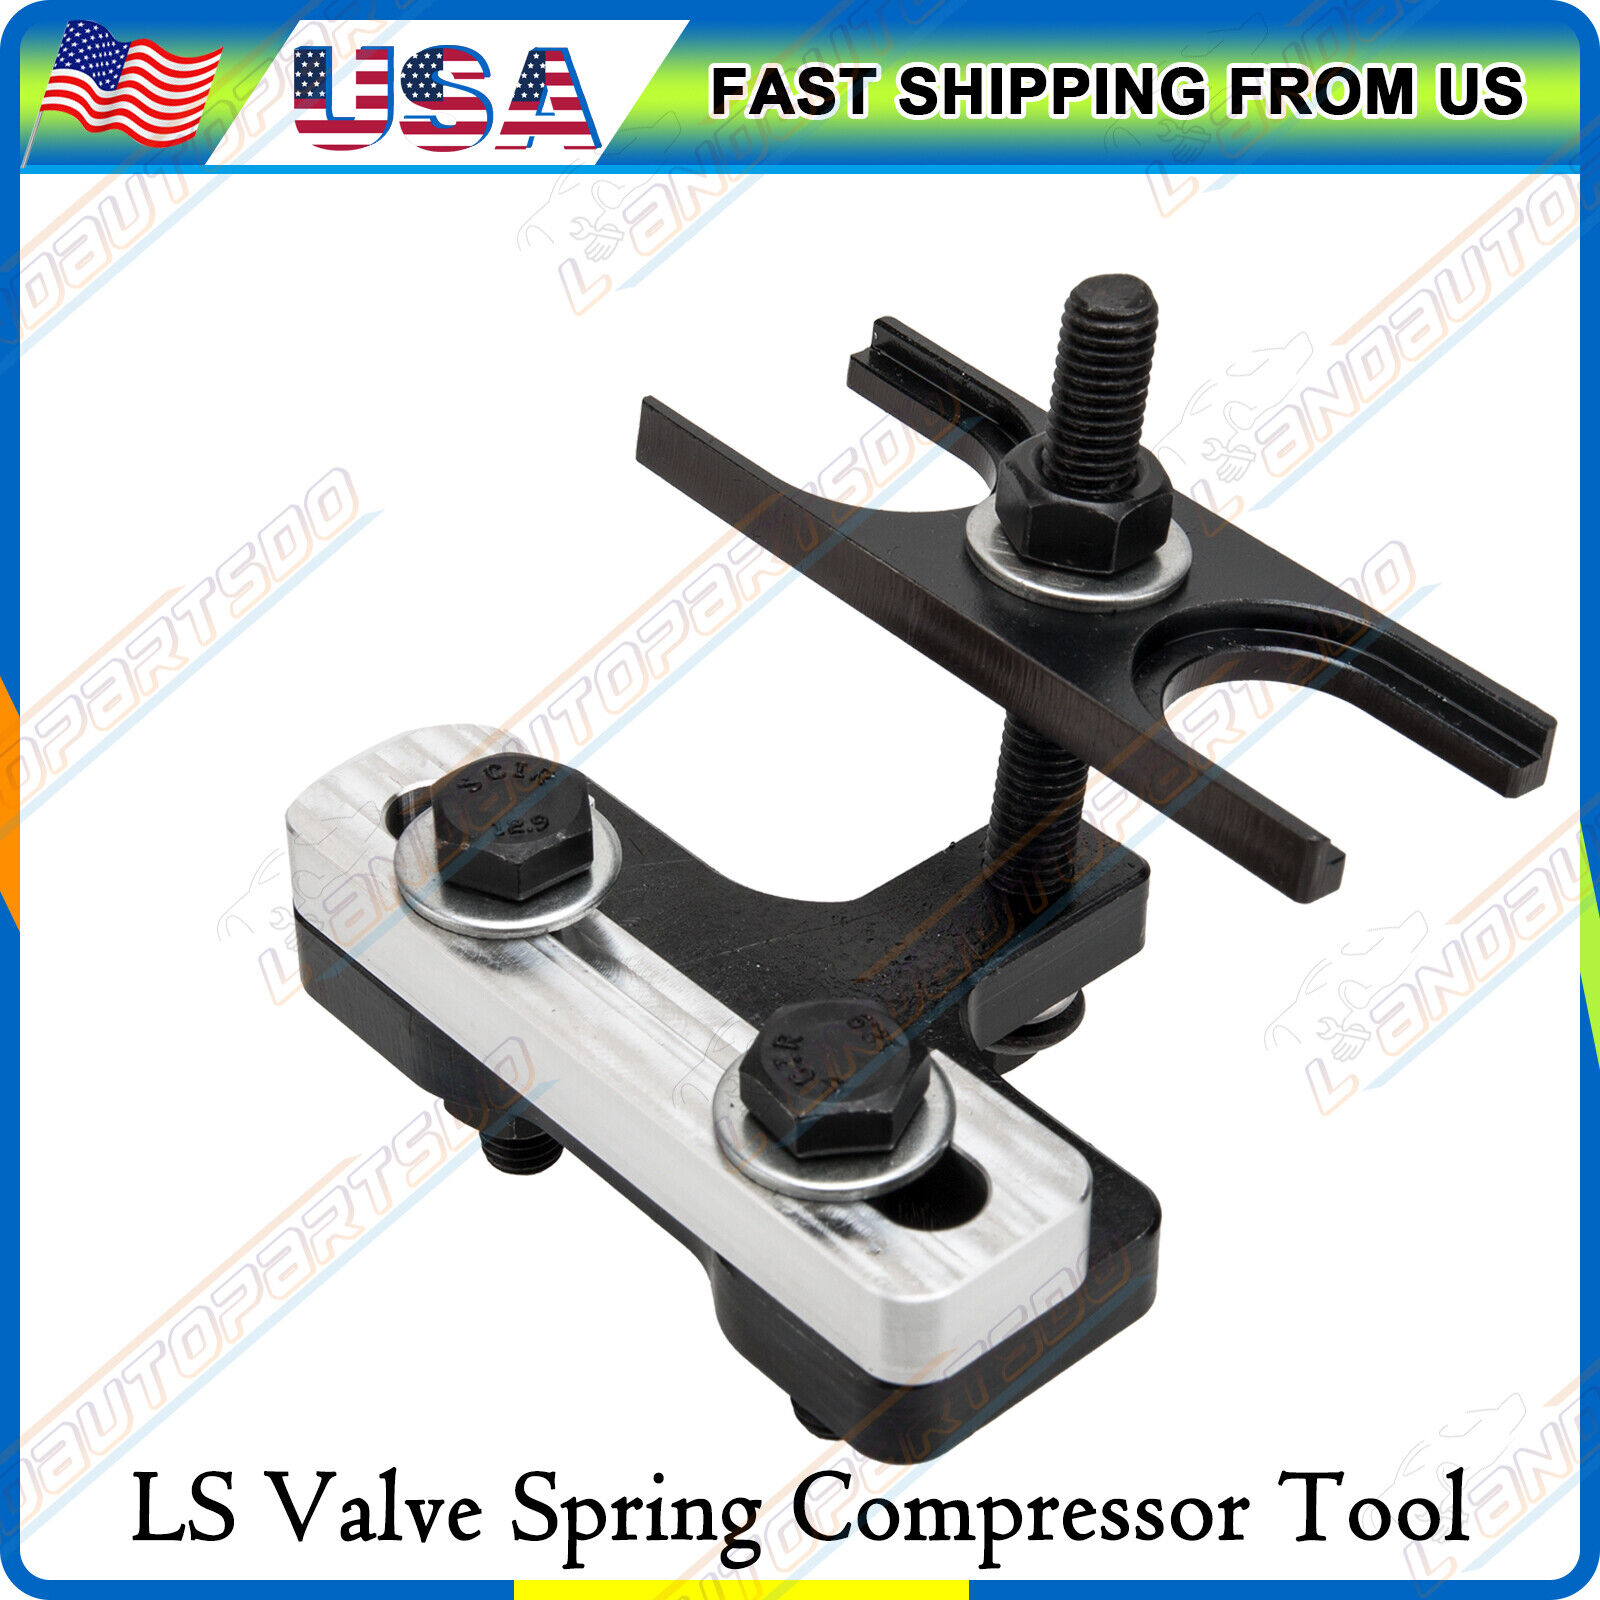 LS Valve Spring Compressor Tool For Chevrolet GM 4.8 5.3 5.7 6.0 6.2 LS1 LS2 LS3